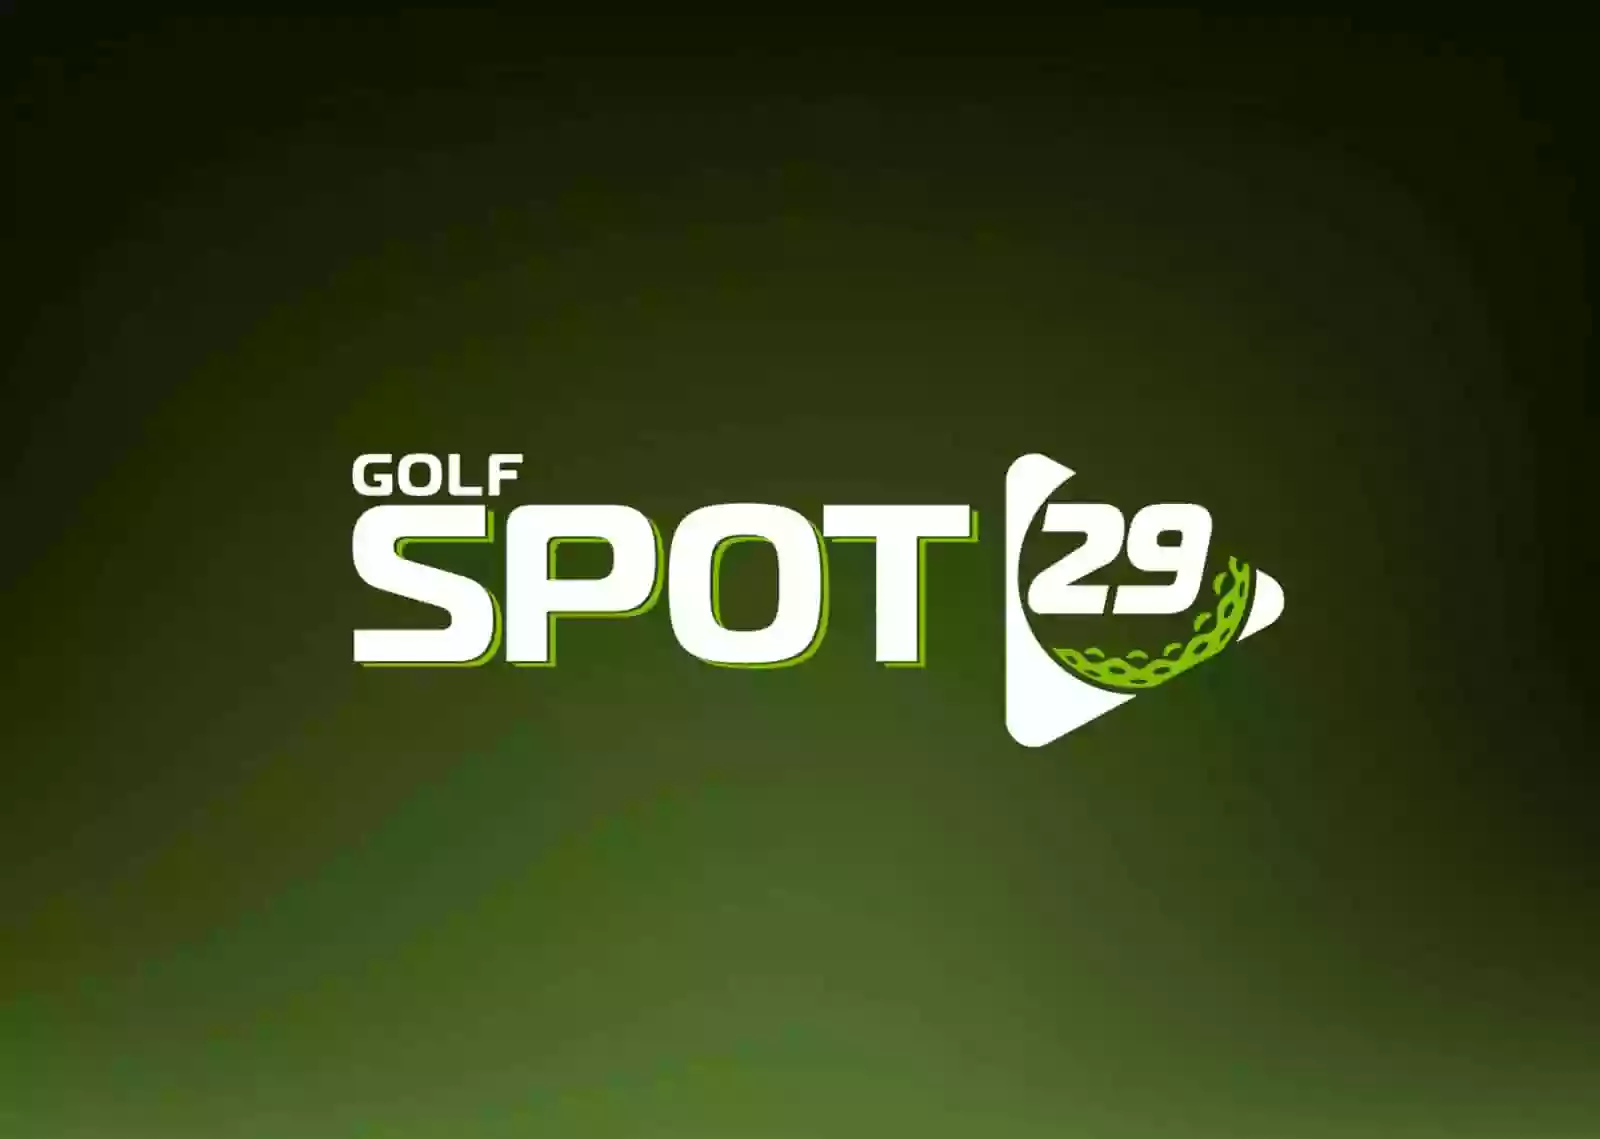 Golf Spot 29